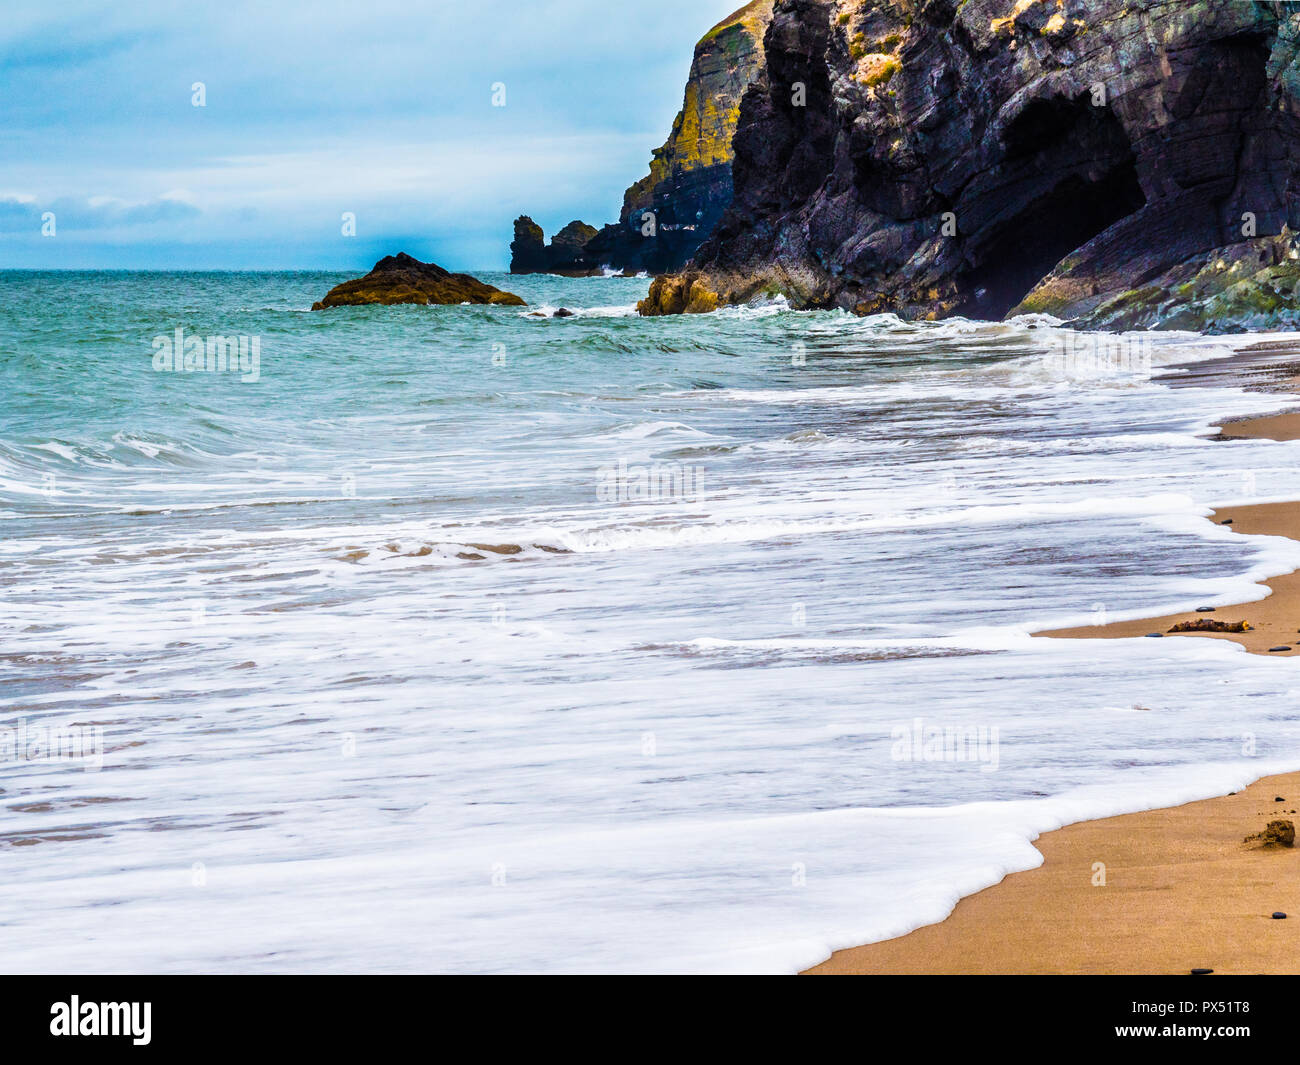 Traeth beach near Penbryn on the Welsh coast in Ceredigion. Stock Photo